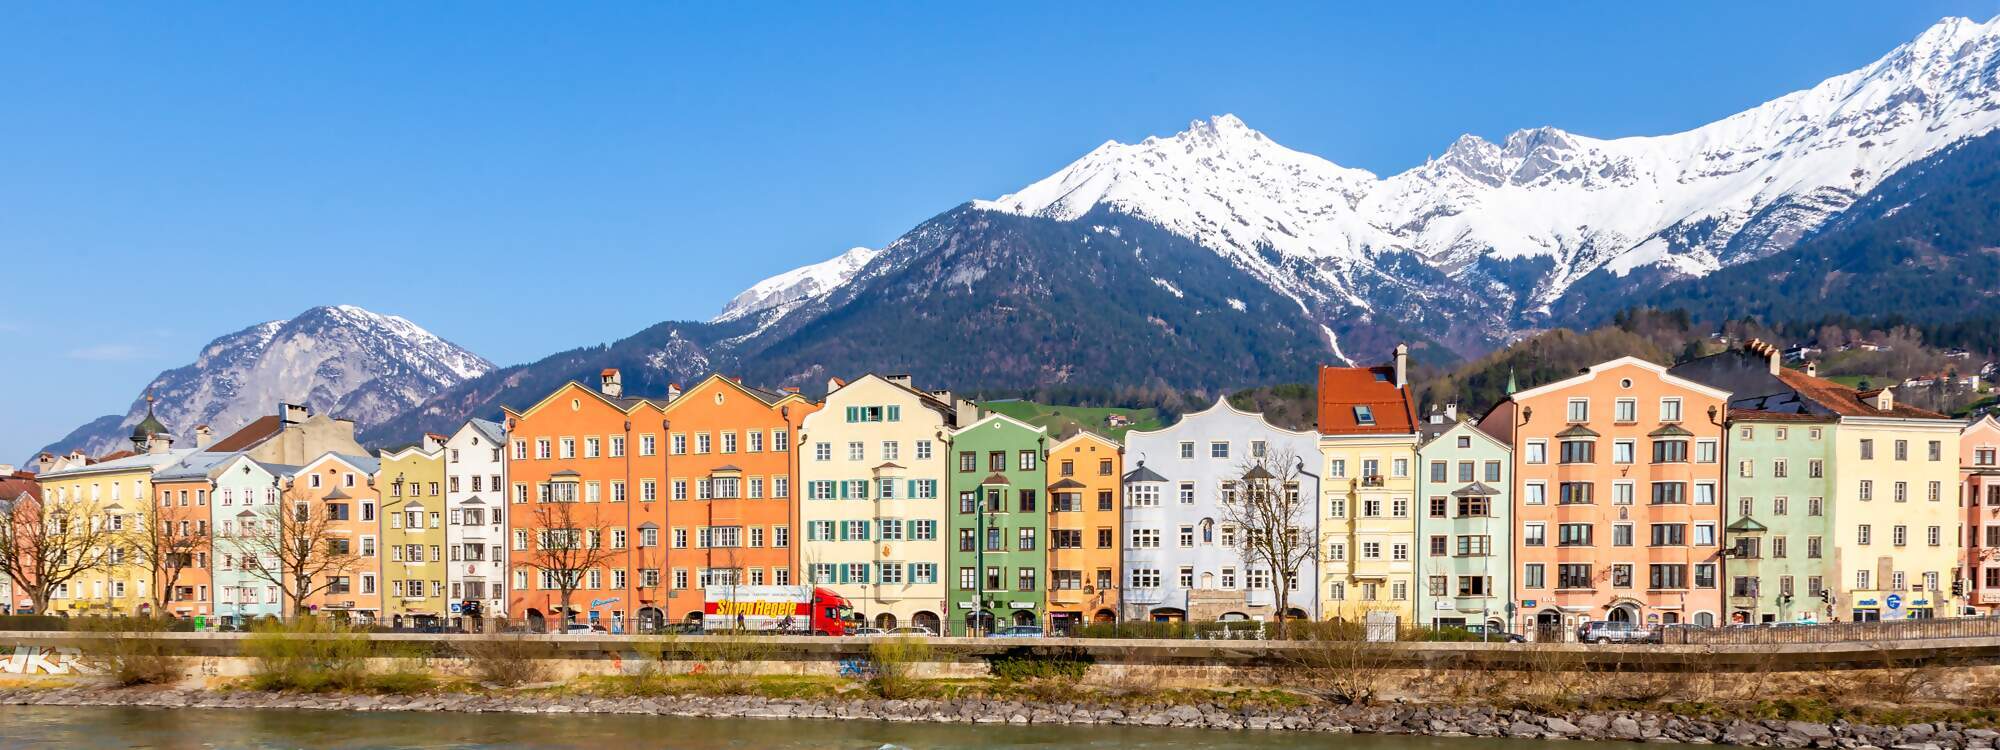 Stadt Urlaub Innsbruck